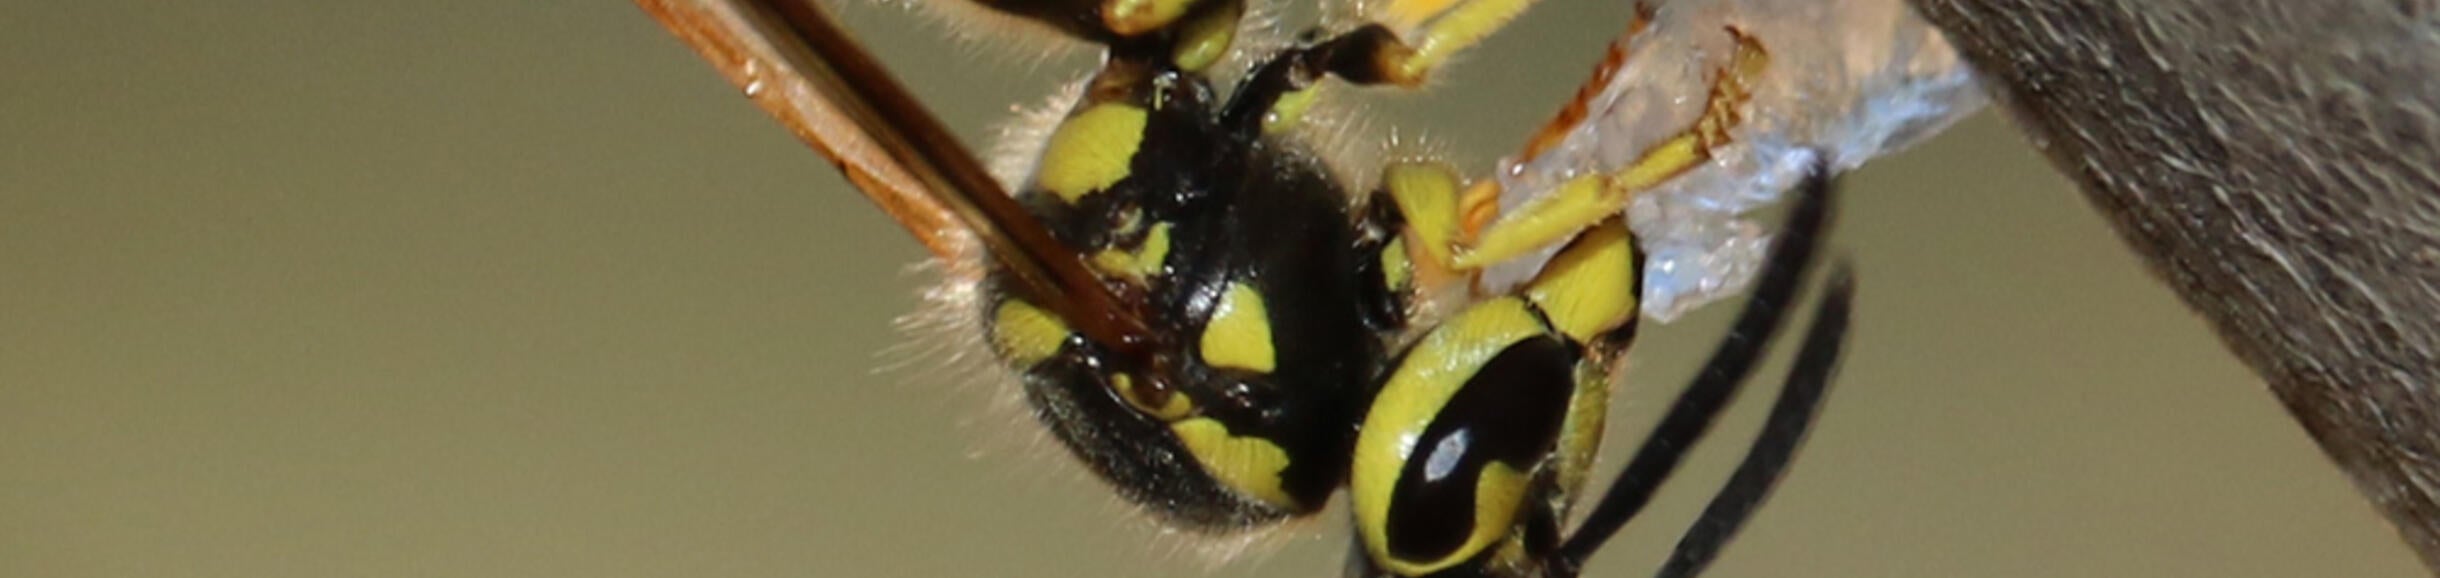 Western yellowjacket wasp handling a hydrogel bait